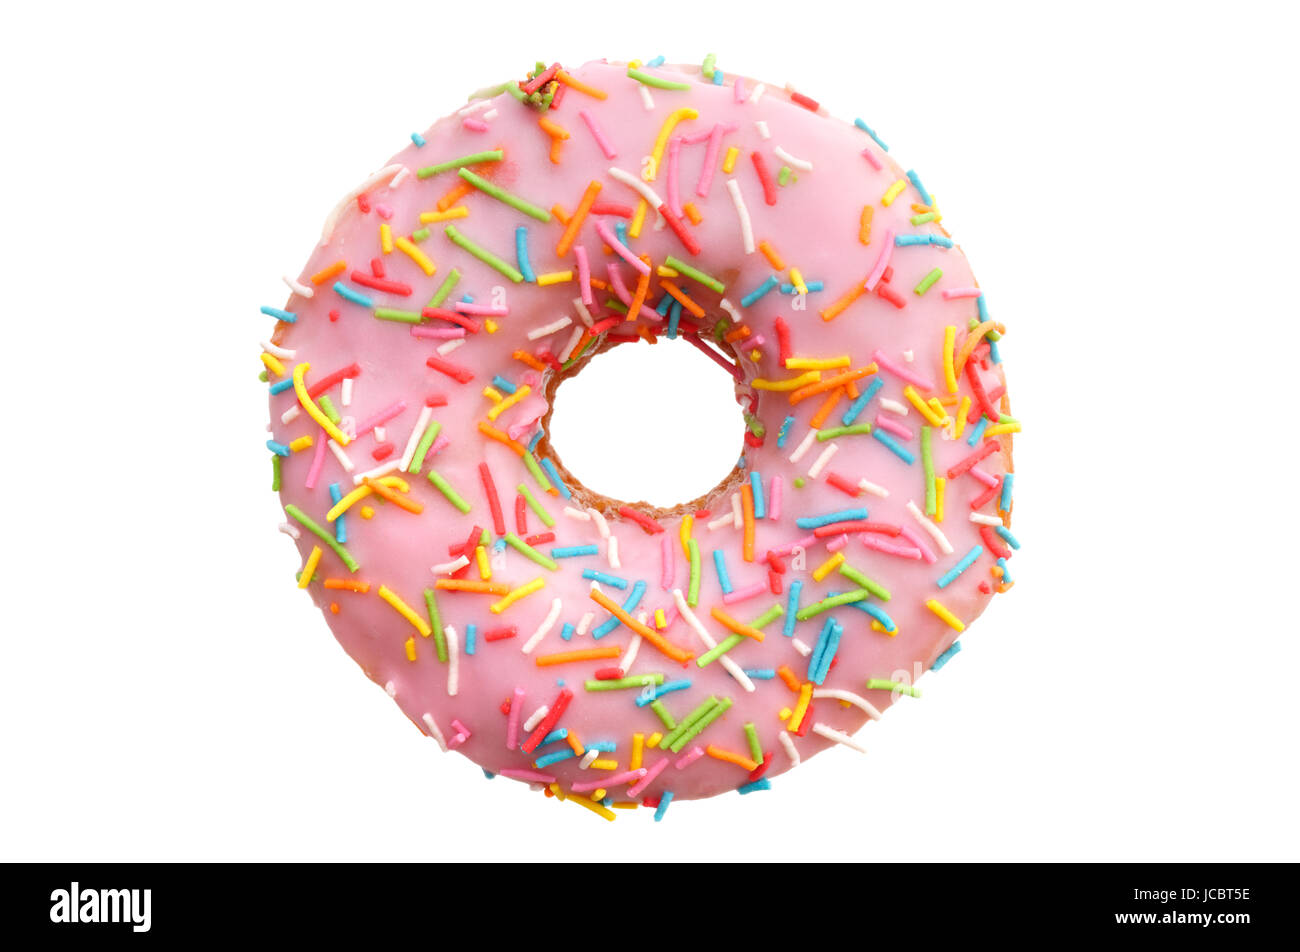 Nourriture et boissons : rose unique donut, isolé sur fond blanc Banque D'Images